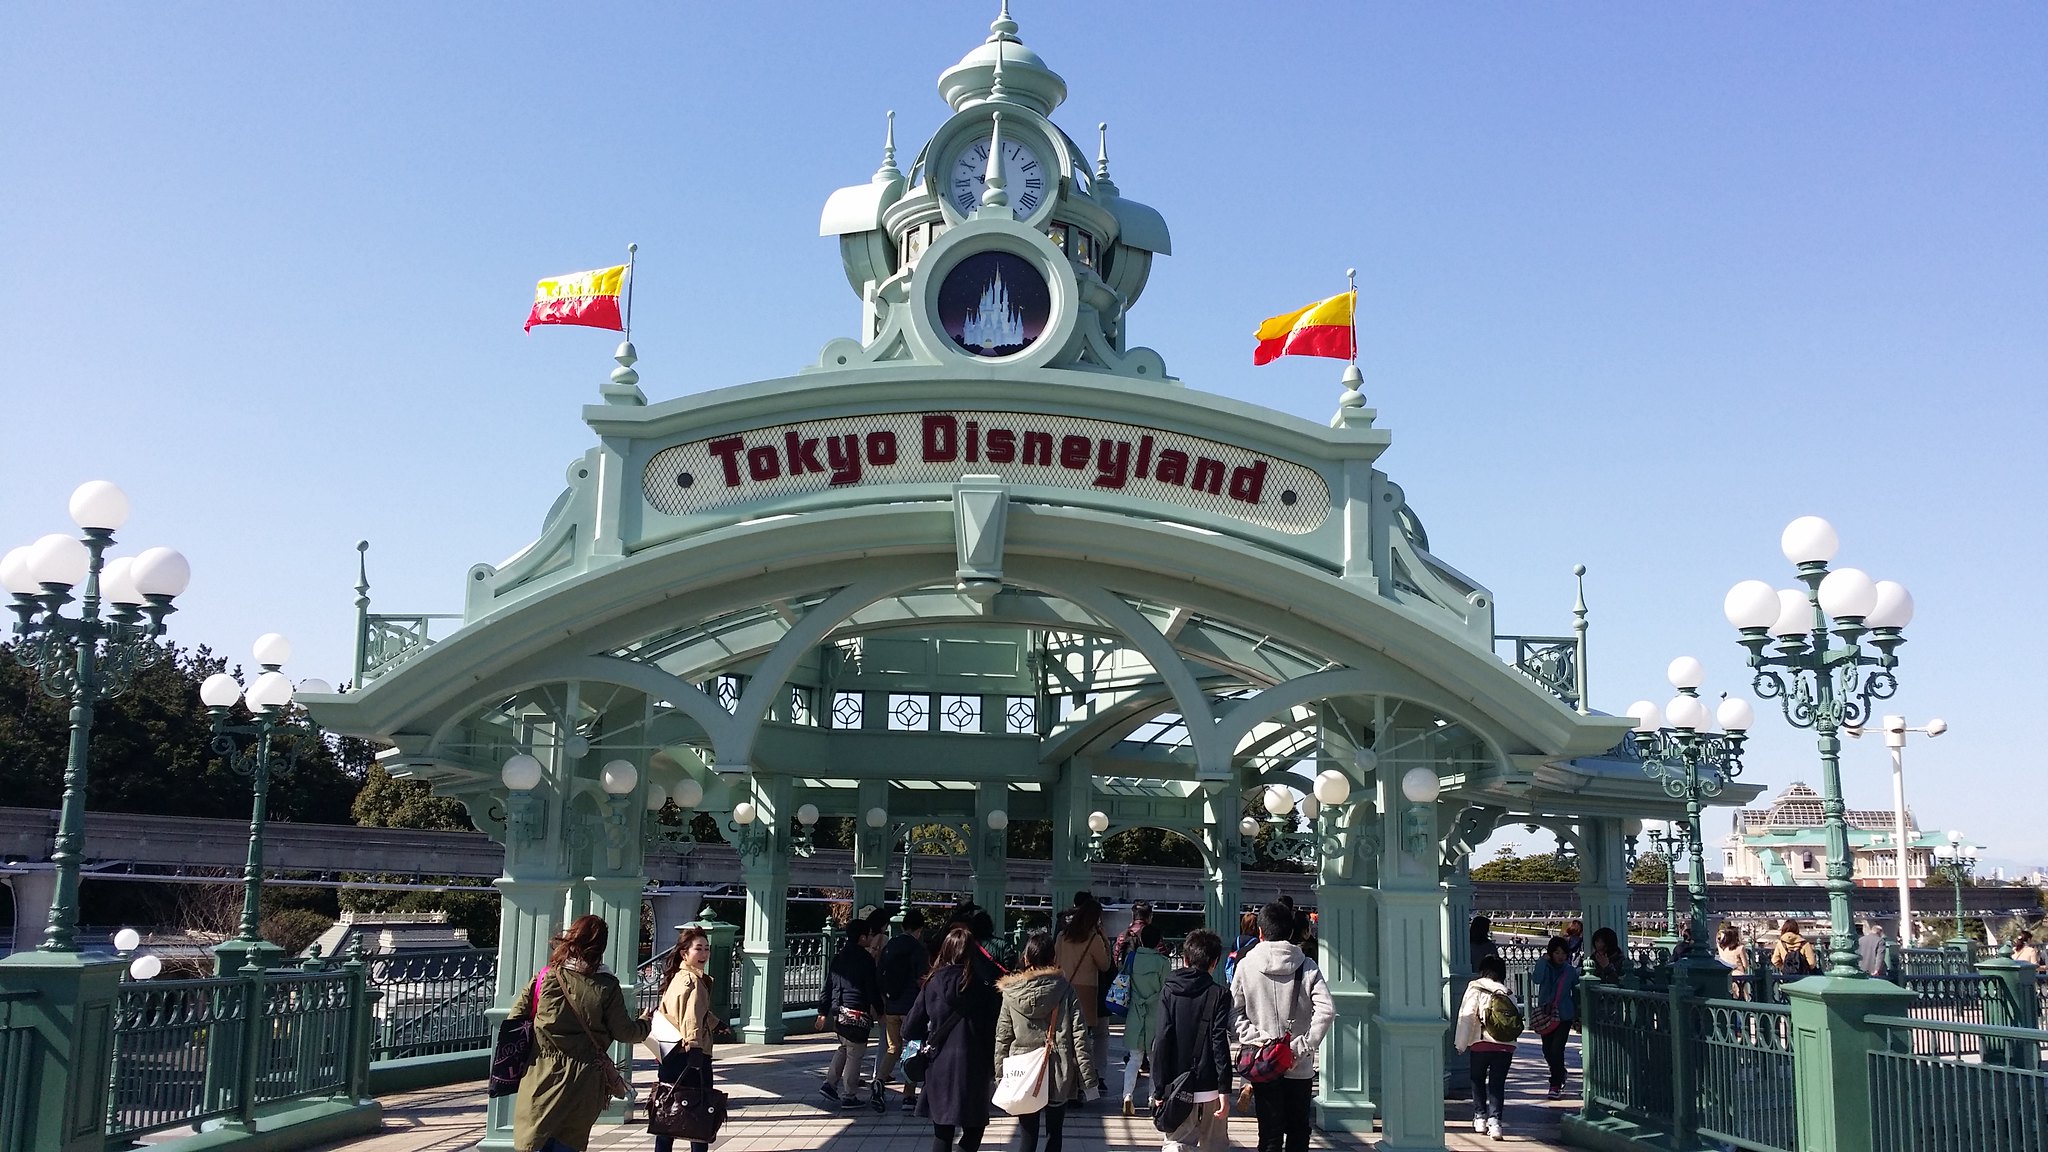 Disneyland à Tokyo